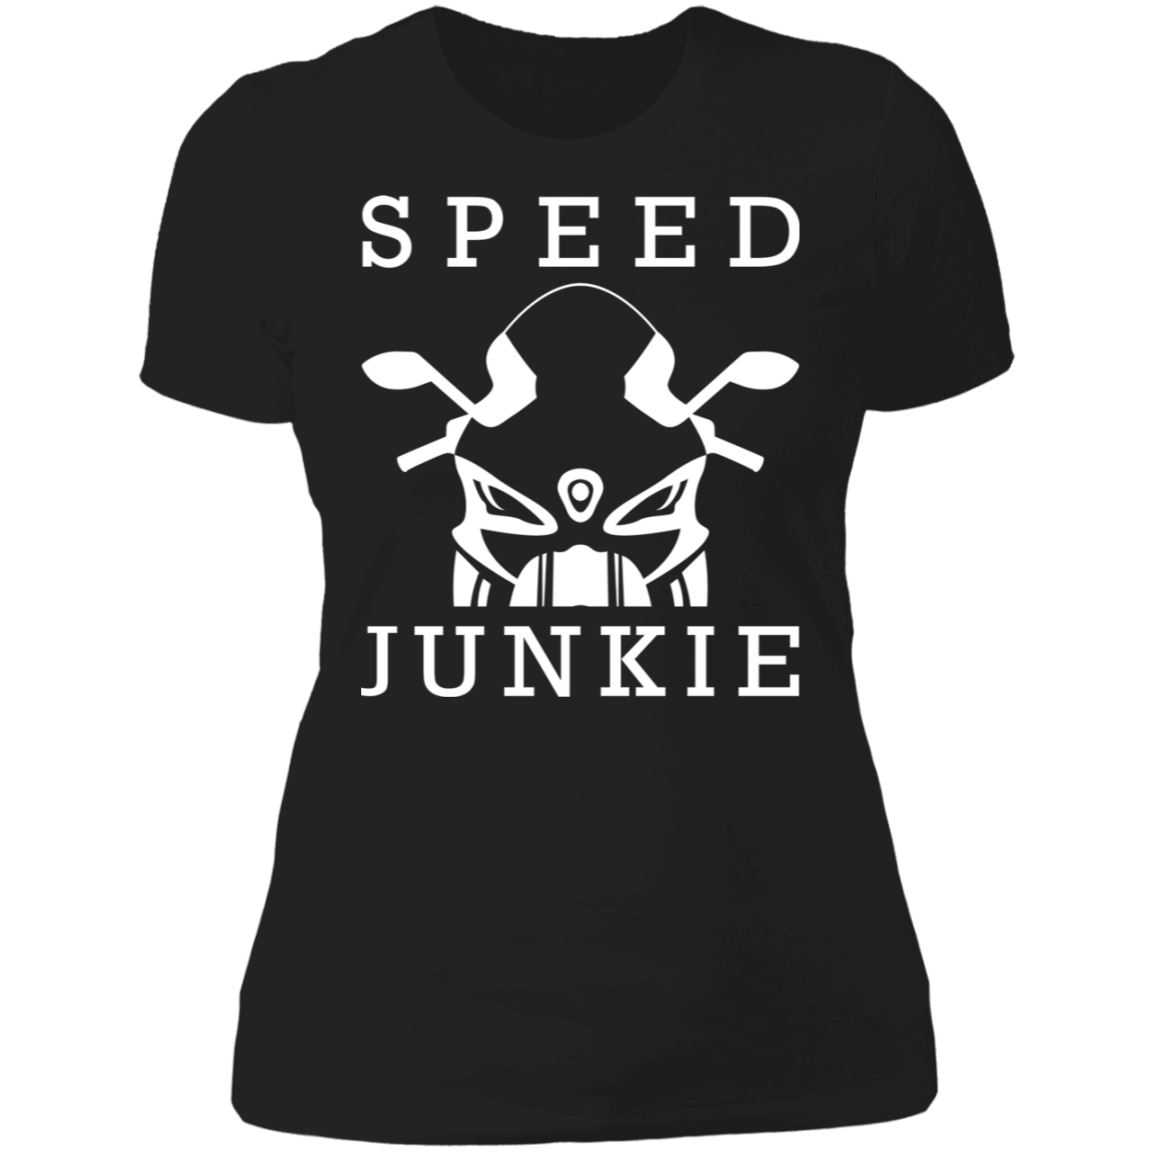 SPEED JUNKIE LADIES T-SHIRT Black X-Small S M L XL 2XL 3XL